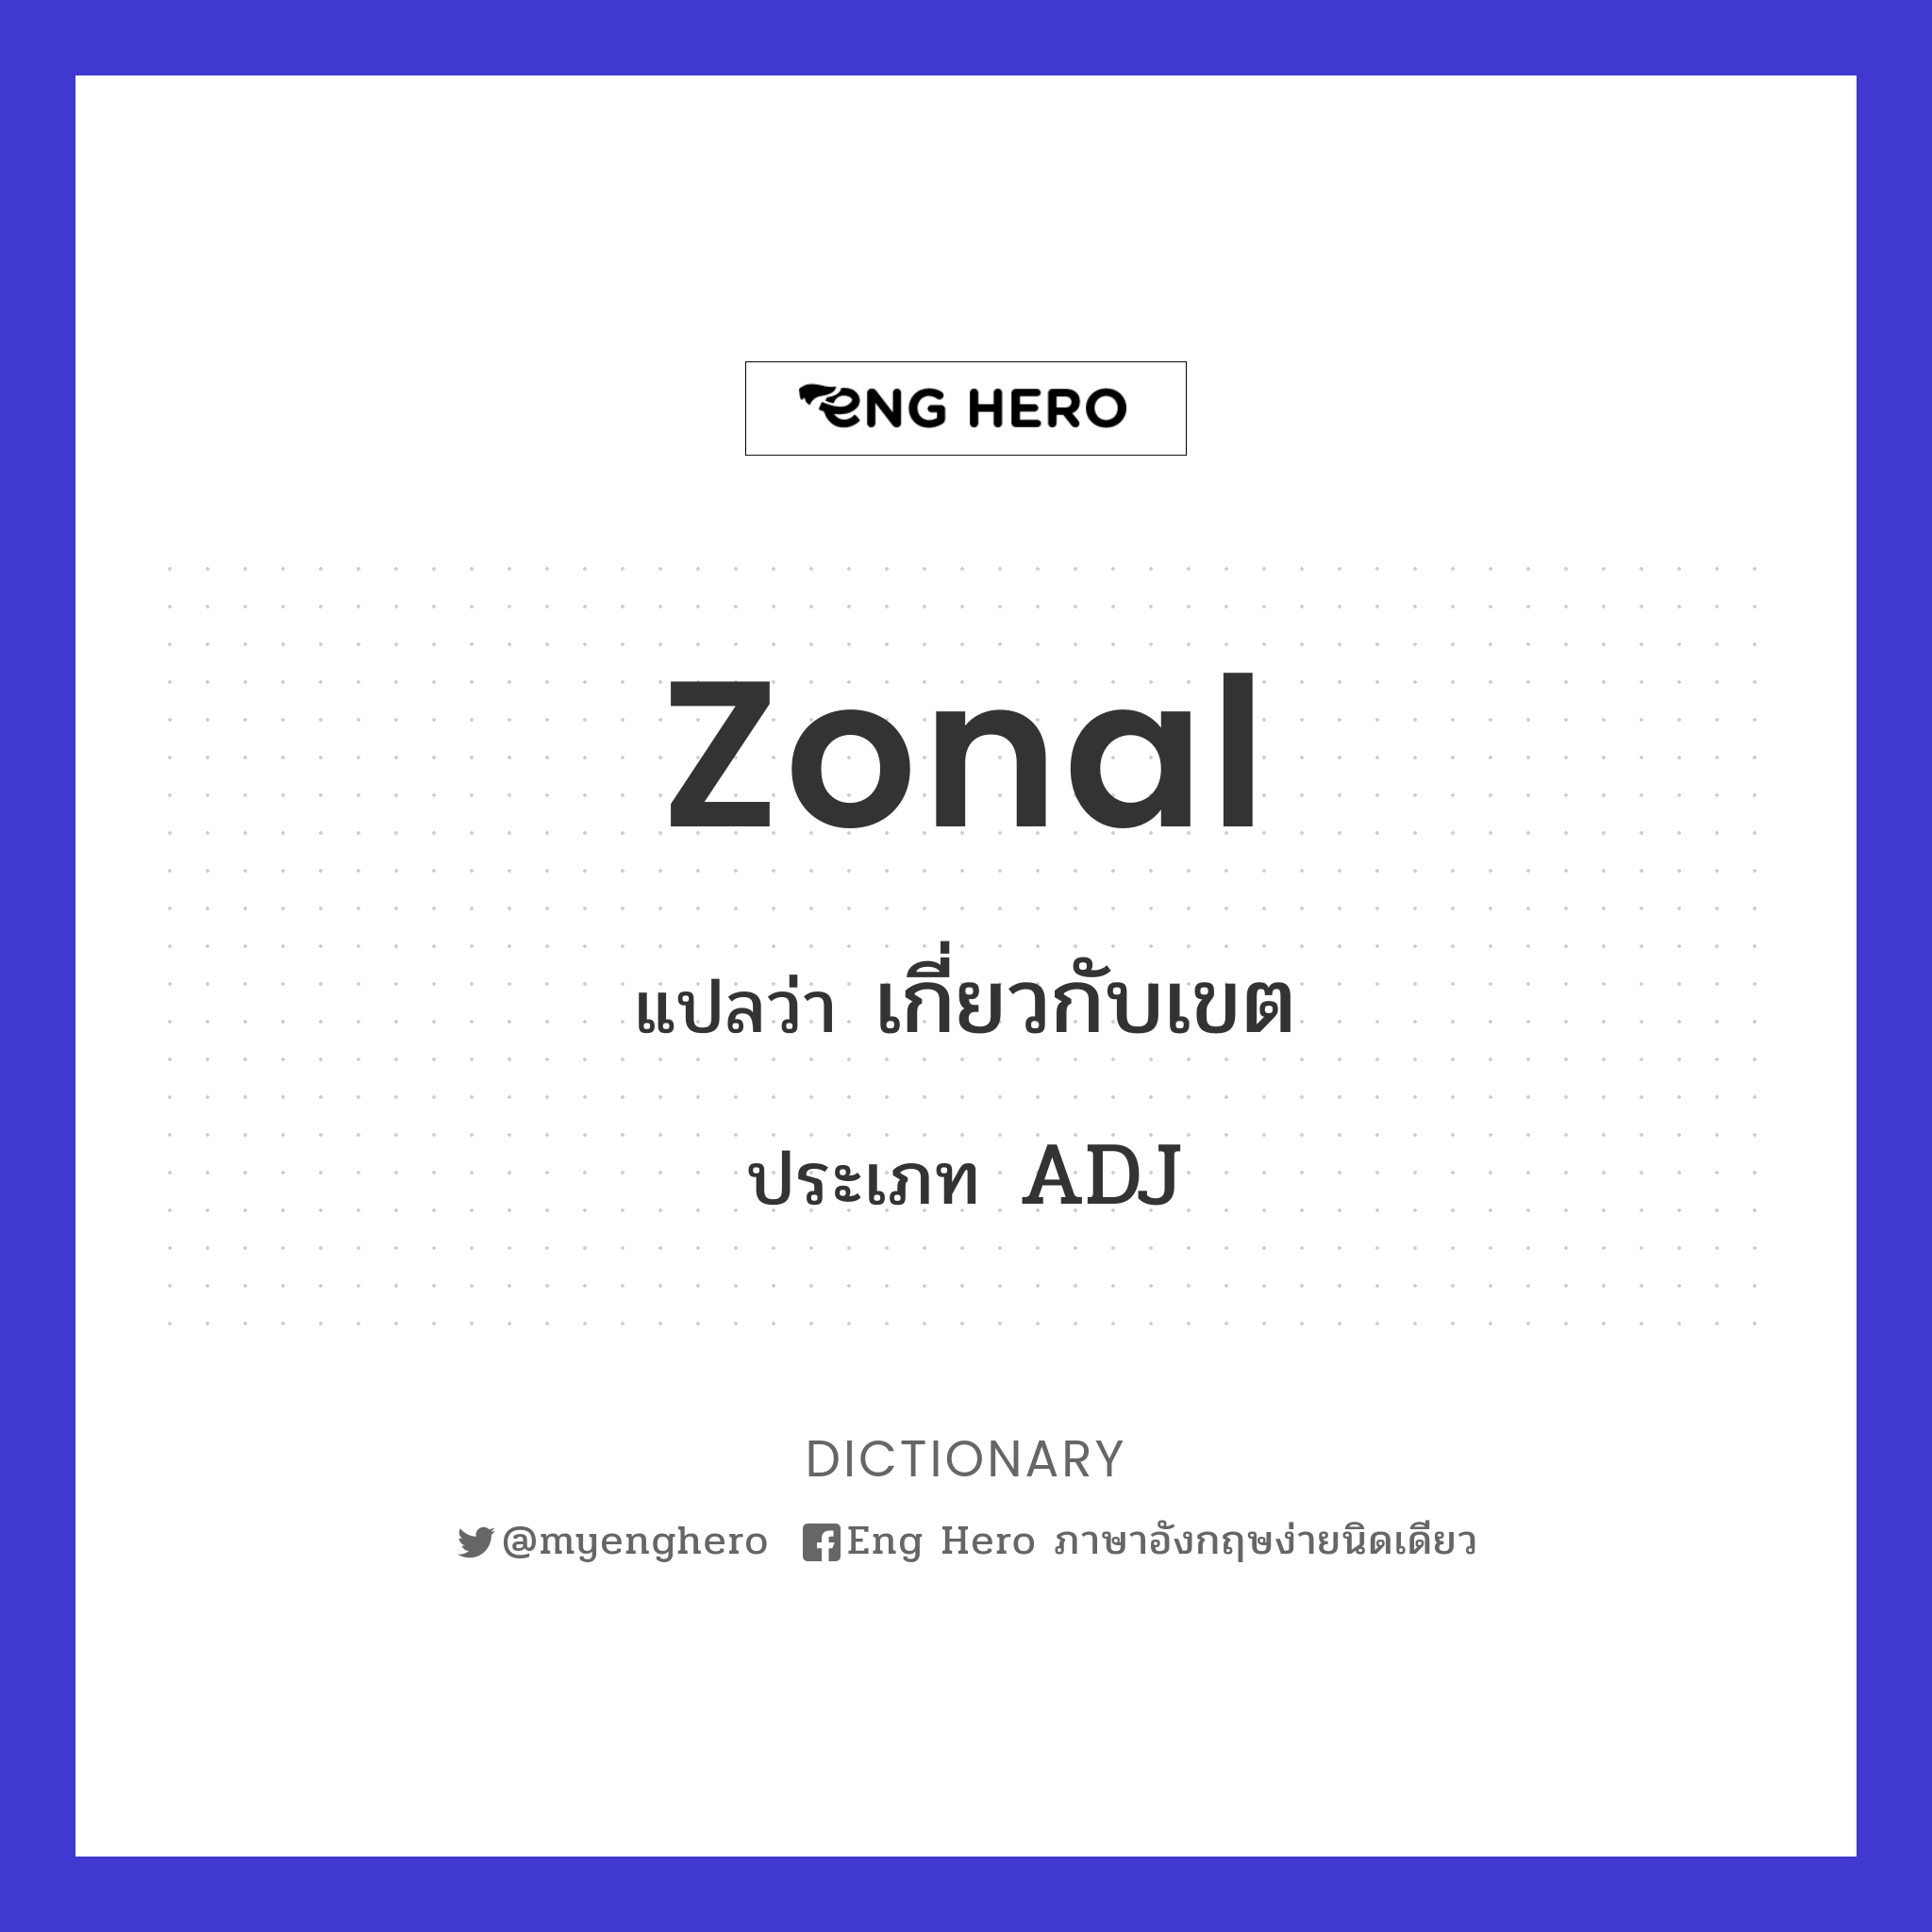 zonal